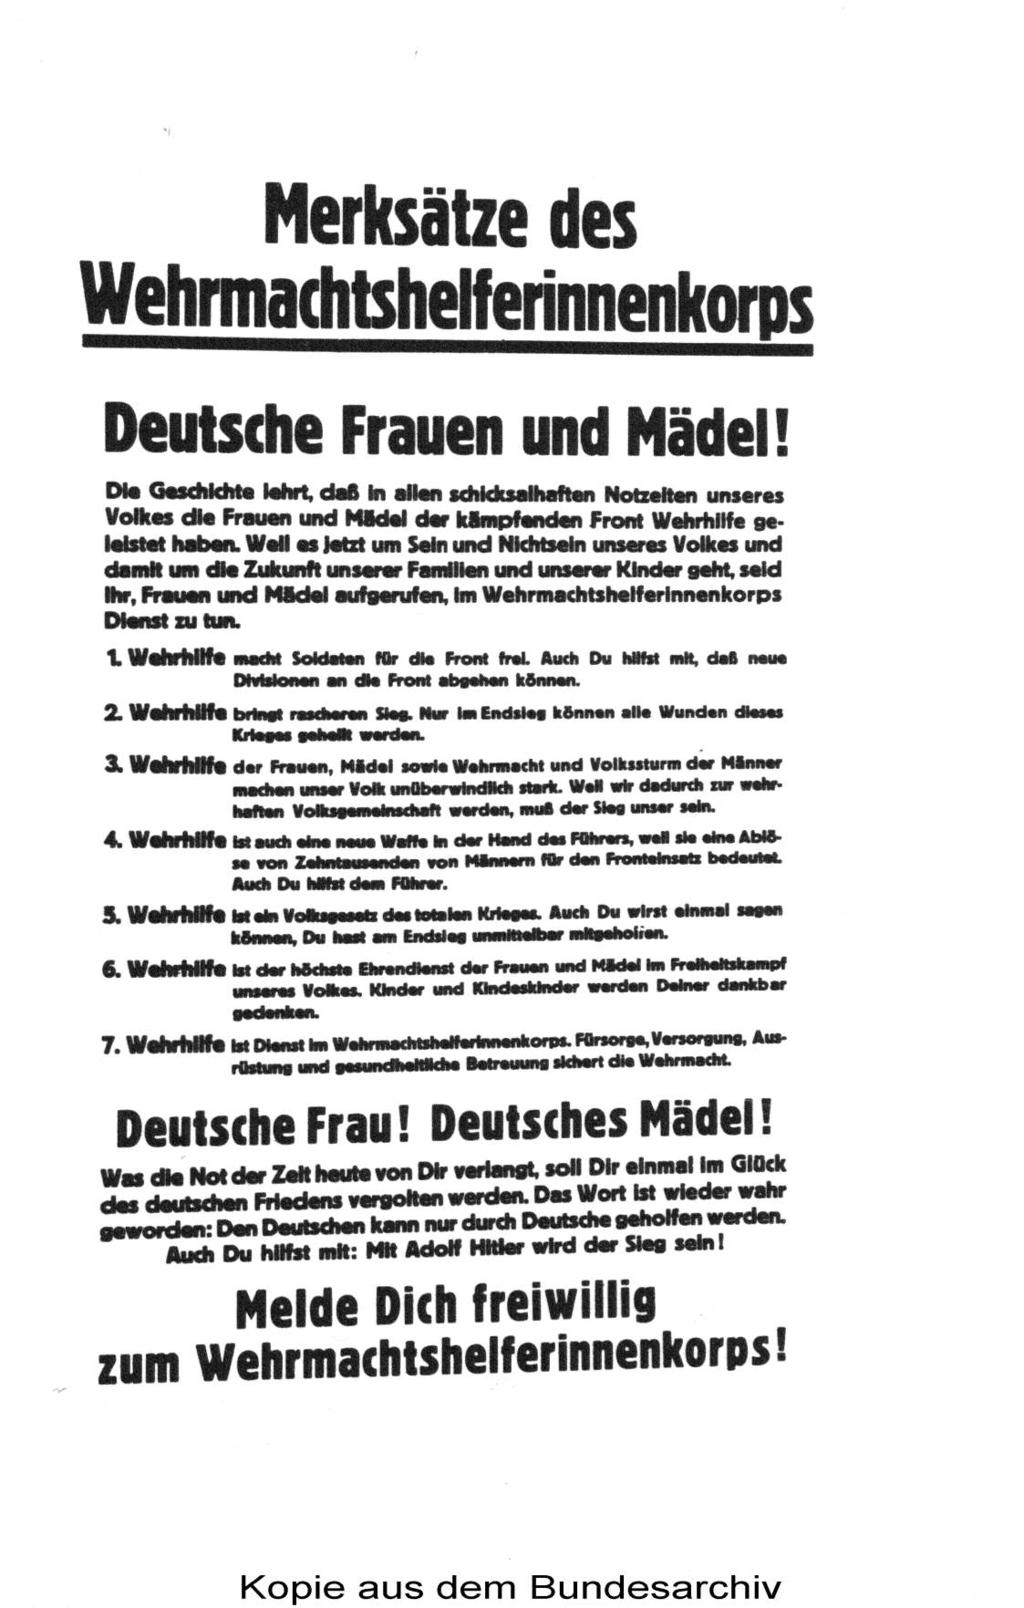 Abbildung 6: Werbeplakat des Gaupropagandaamtes Reichenberg vom 12.01.